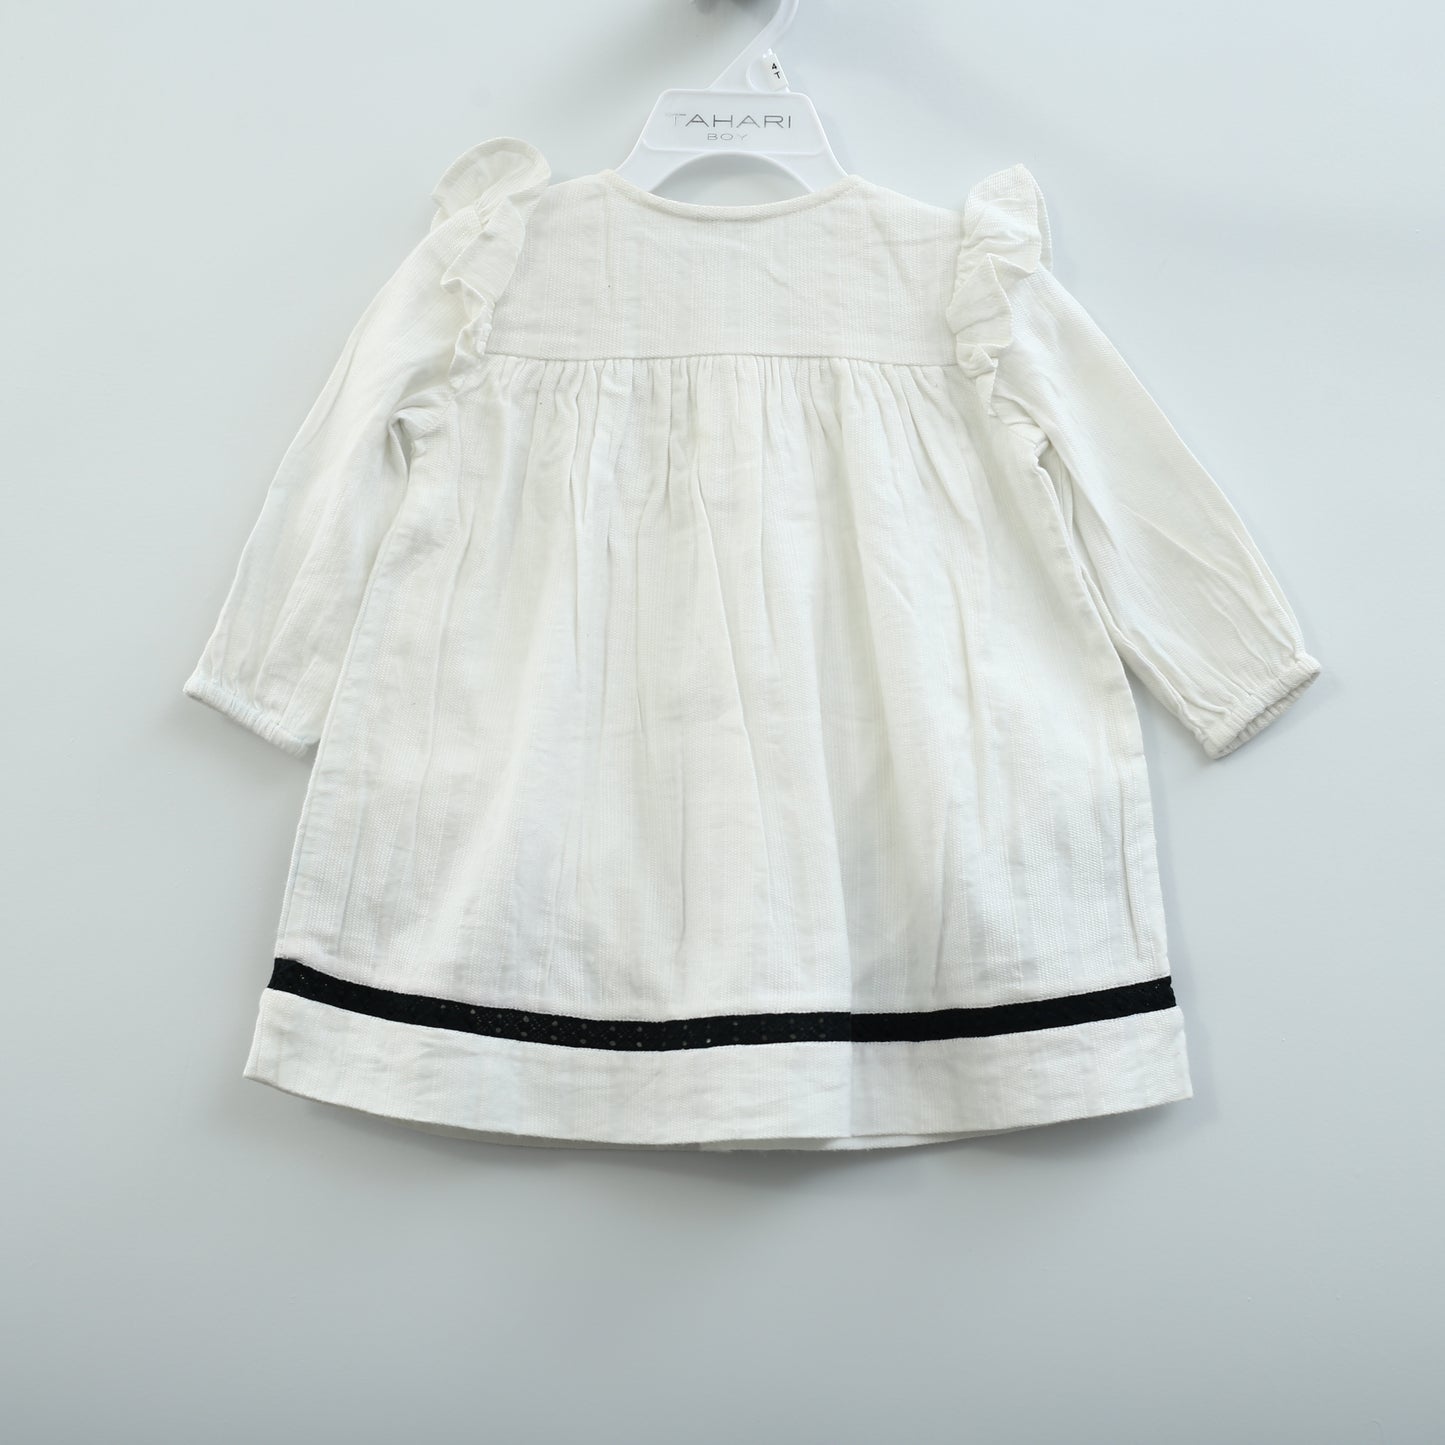 白巧克力儿童女孩刺绣连衣裙 2-3 岁